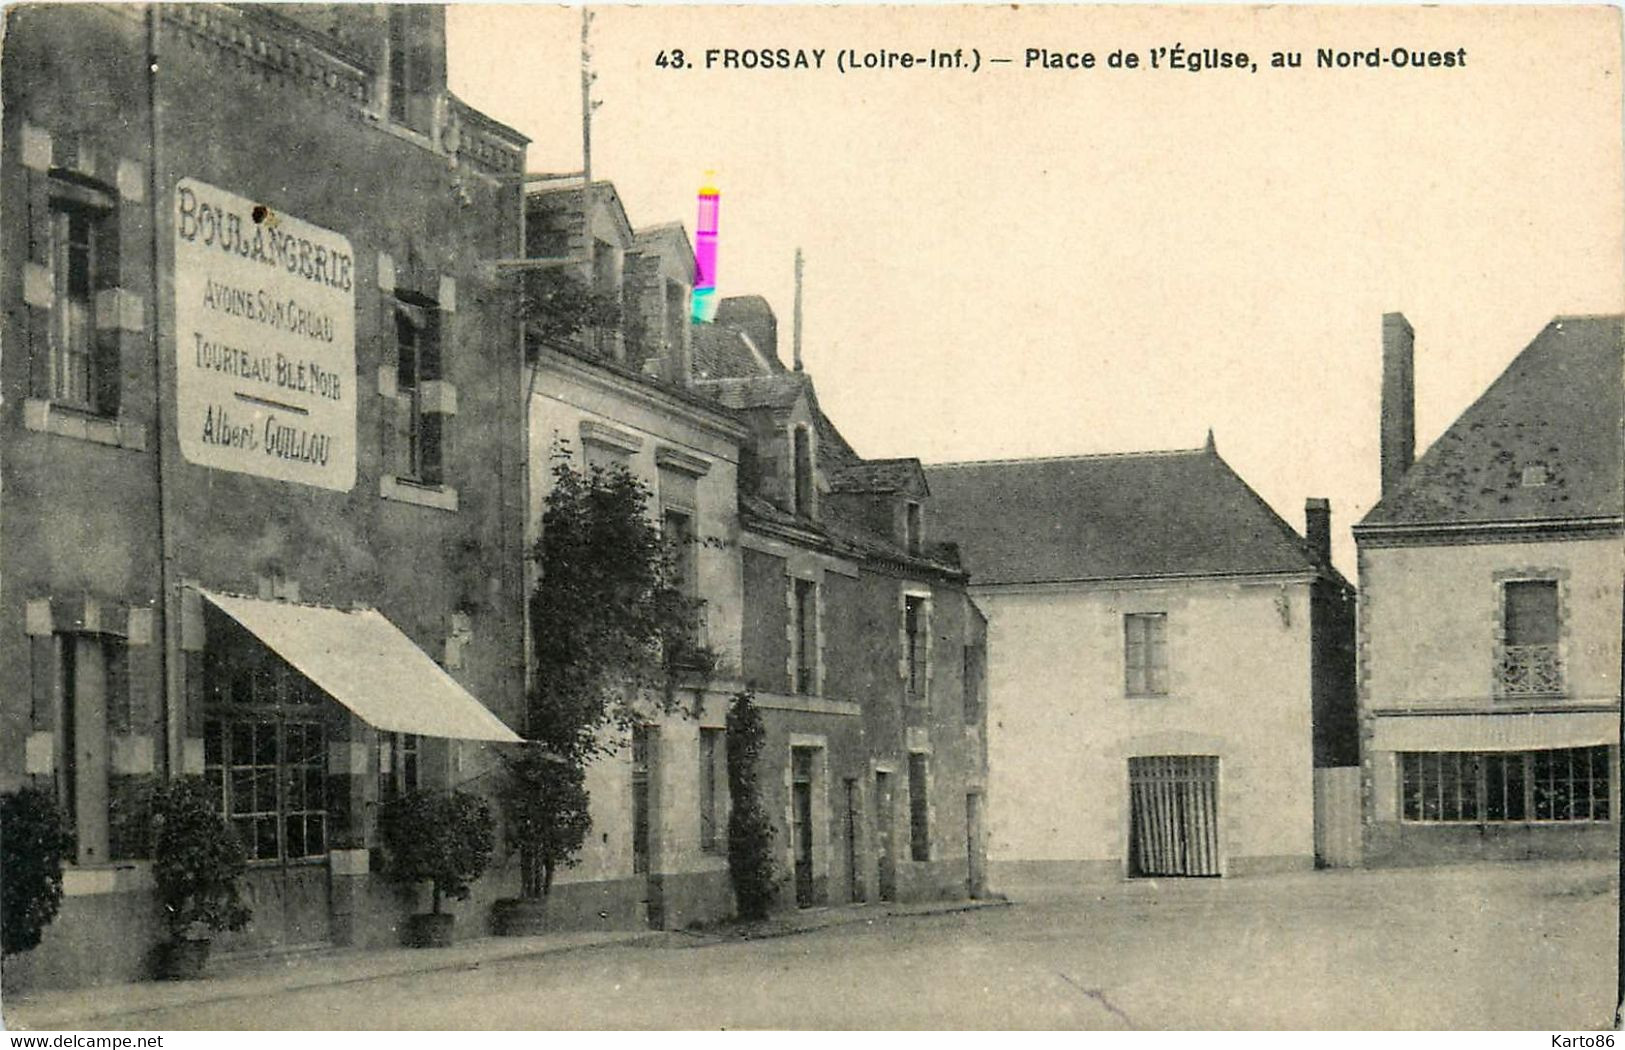 Frossay * Place De L'église Au Nord Ouest * Boulangerie Albert GUILLOU - Frossay